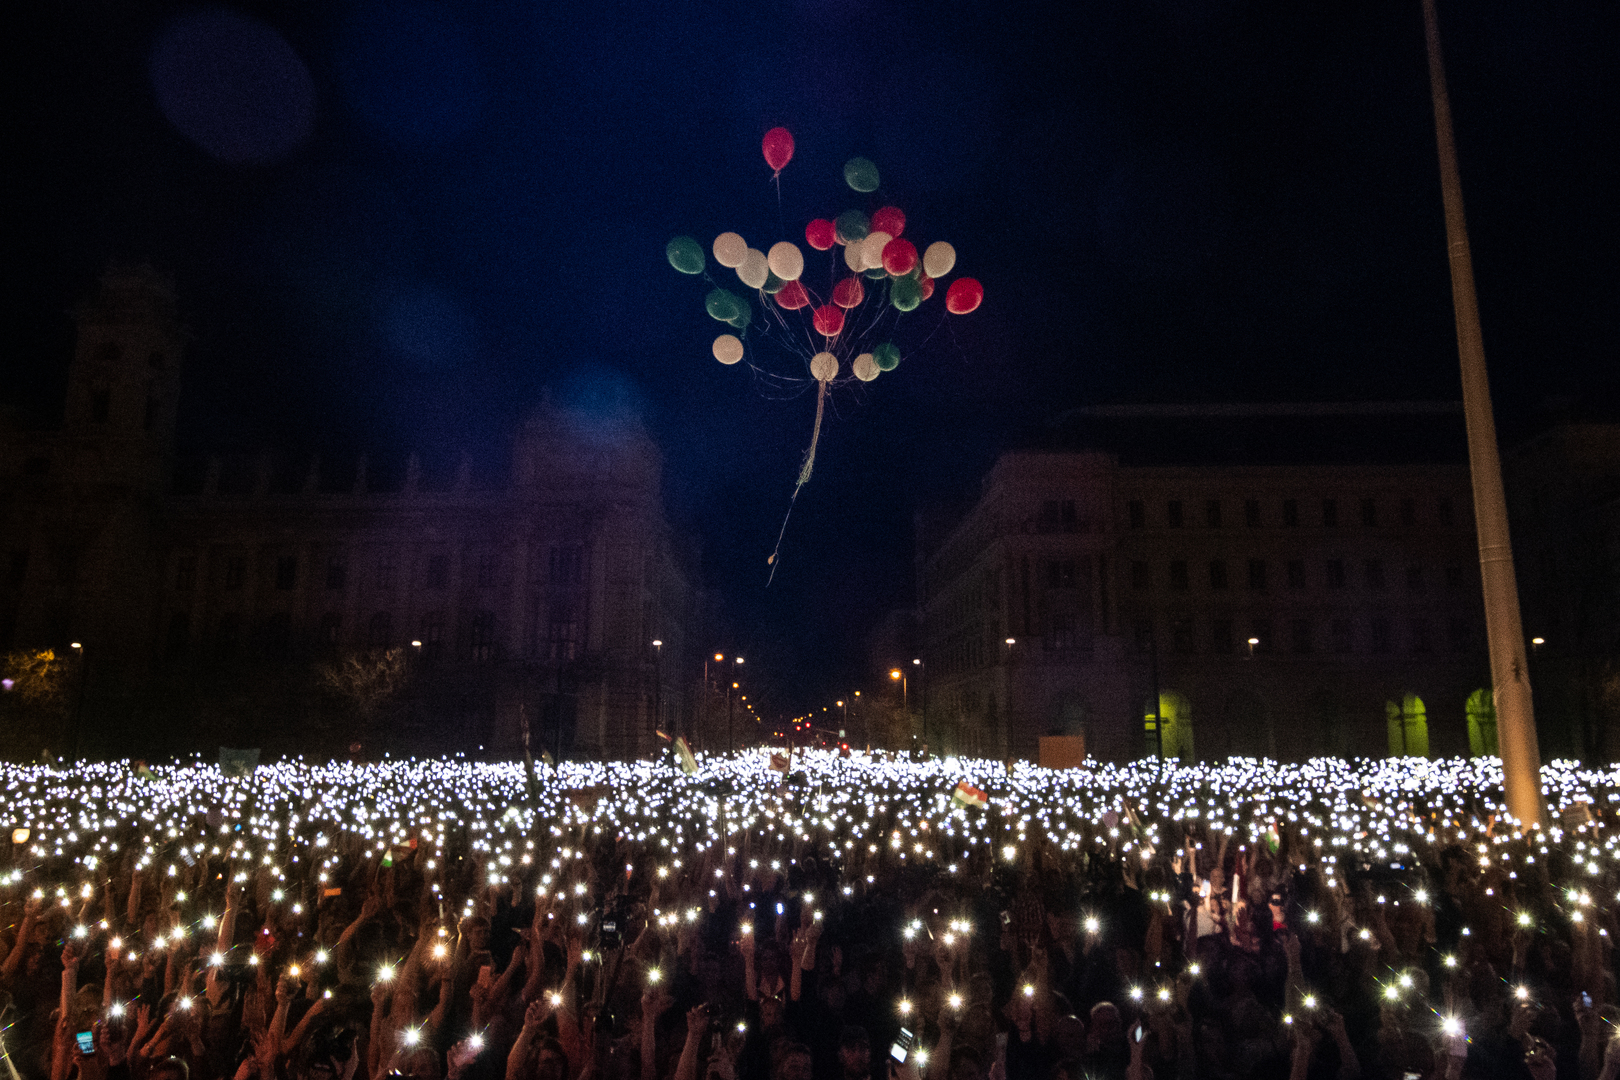 Hír-, eseményfotó<br />1. díj: Mónus Márton (MTI/MTVA): Lufi<br /><br />Fotó: Az ellenzéki pártok részvételével tartott demonstráció Budapesten, a Kossuth téren 2018. április 14-én.